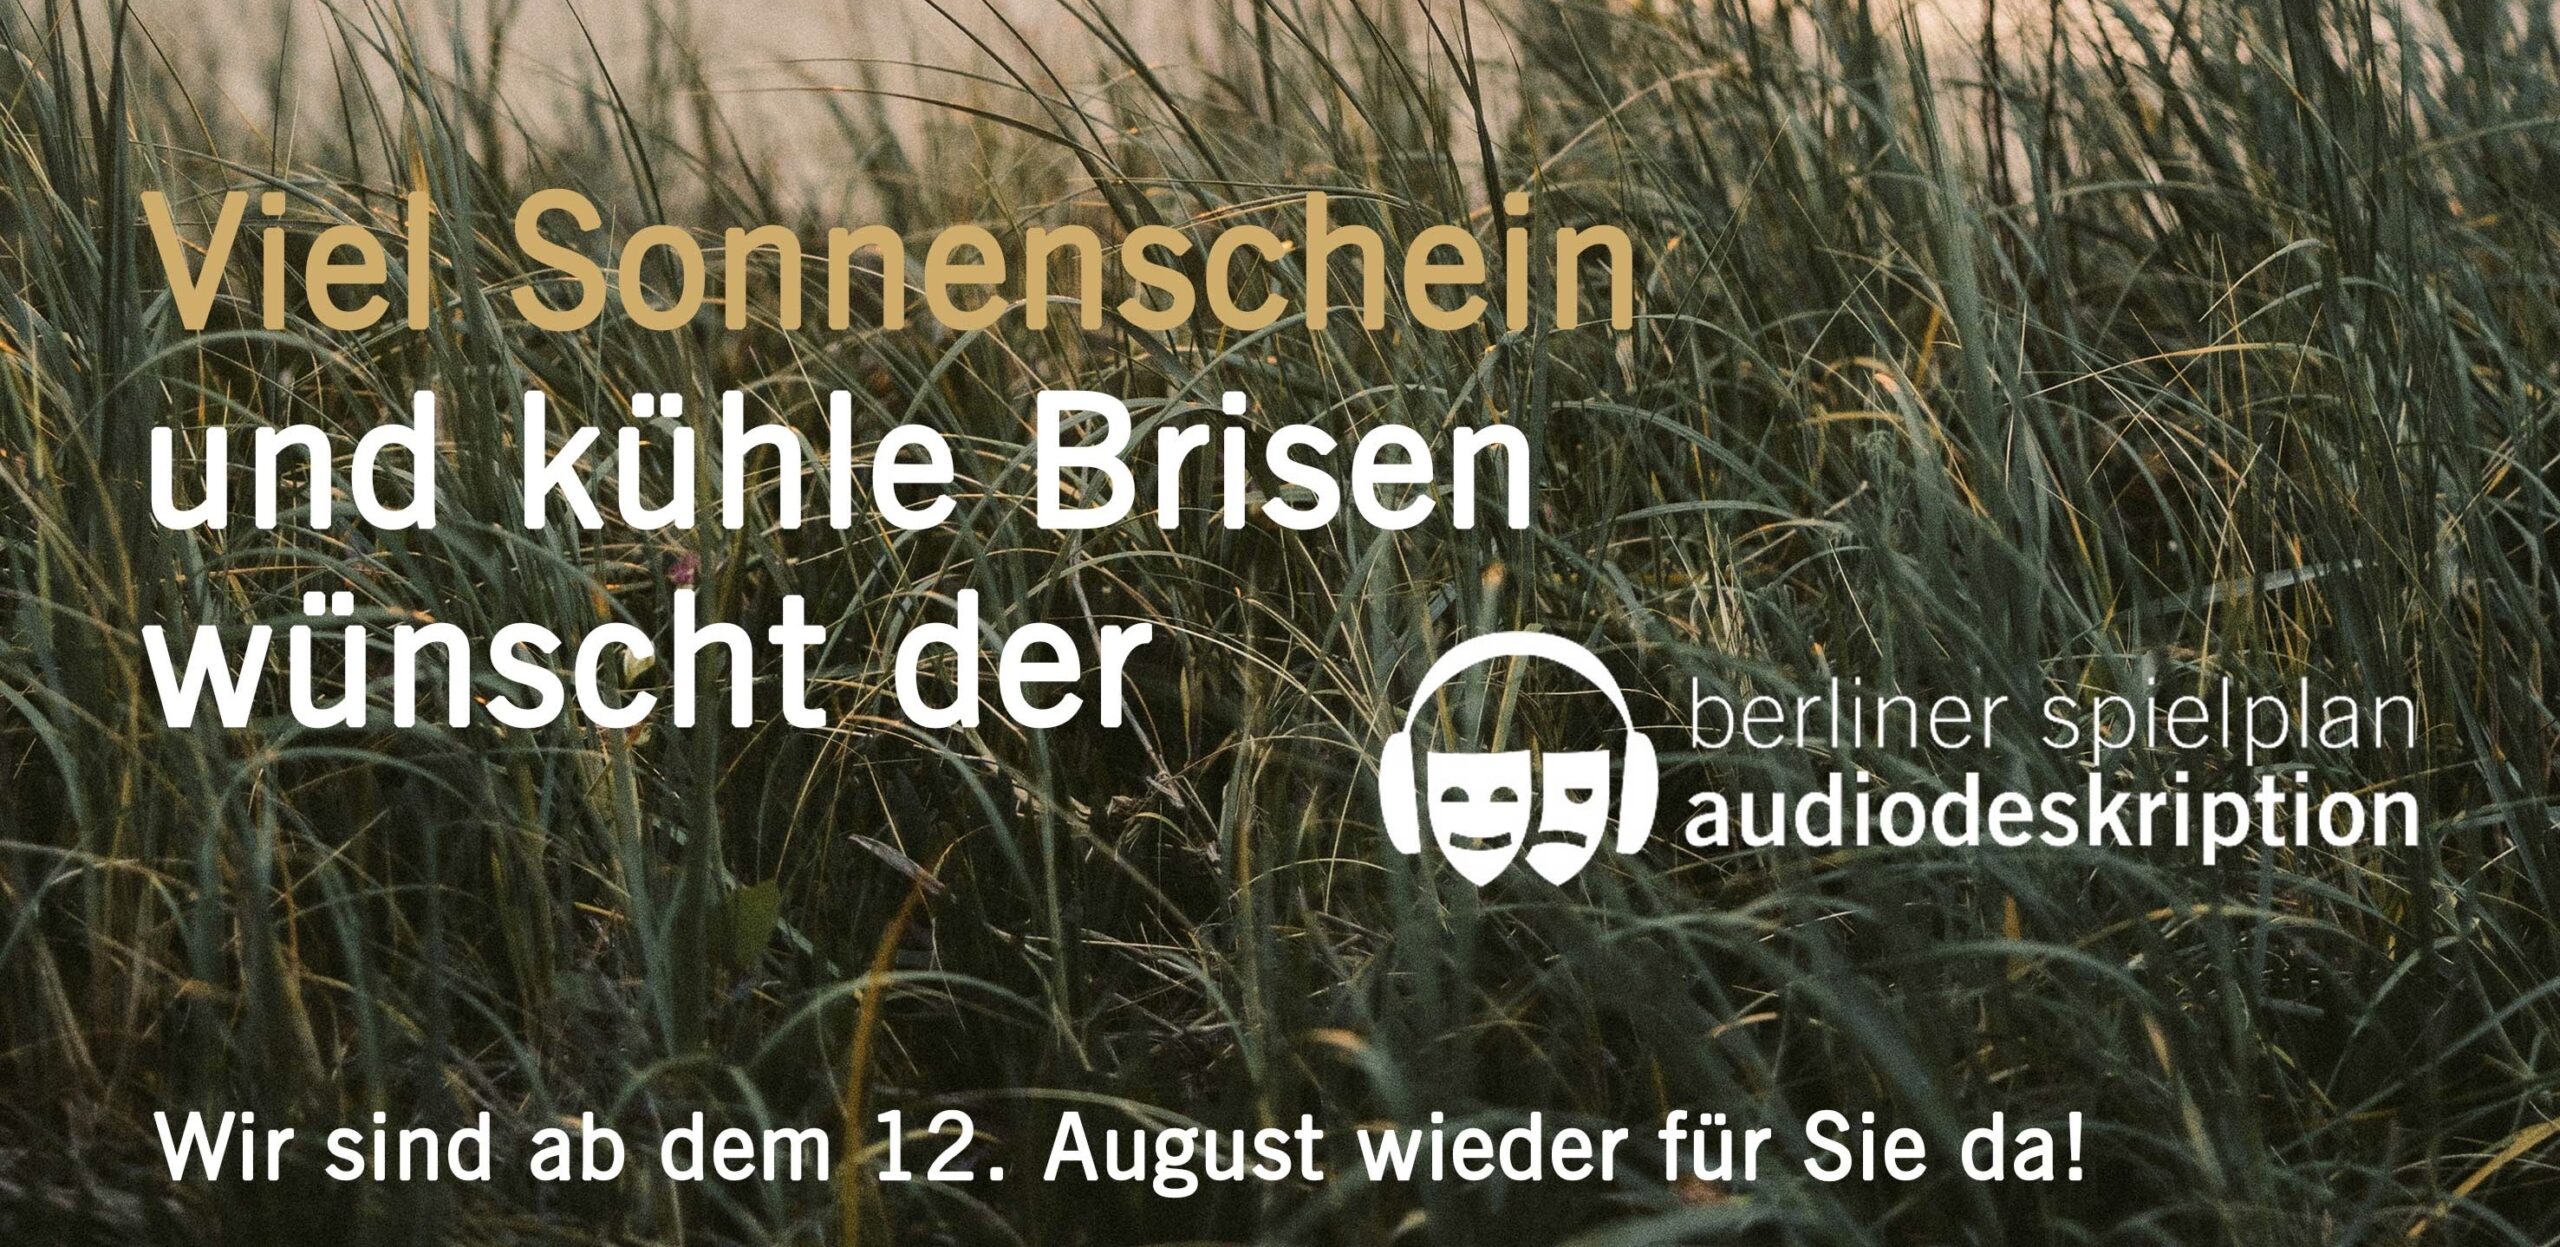 Die Abendsonne spiegelt sich im Meer hinter den grünen Gräsern der Dünen. Darüber der Text: Viel Sonnenschein und kühle Brisen wünscht der Berliner Spielplan Audiodeskription. Wir sind am 12. August wieder für Sie da.